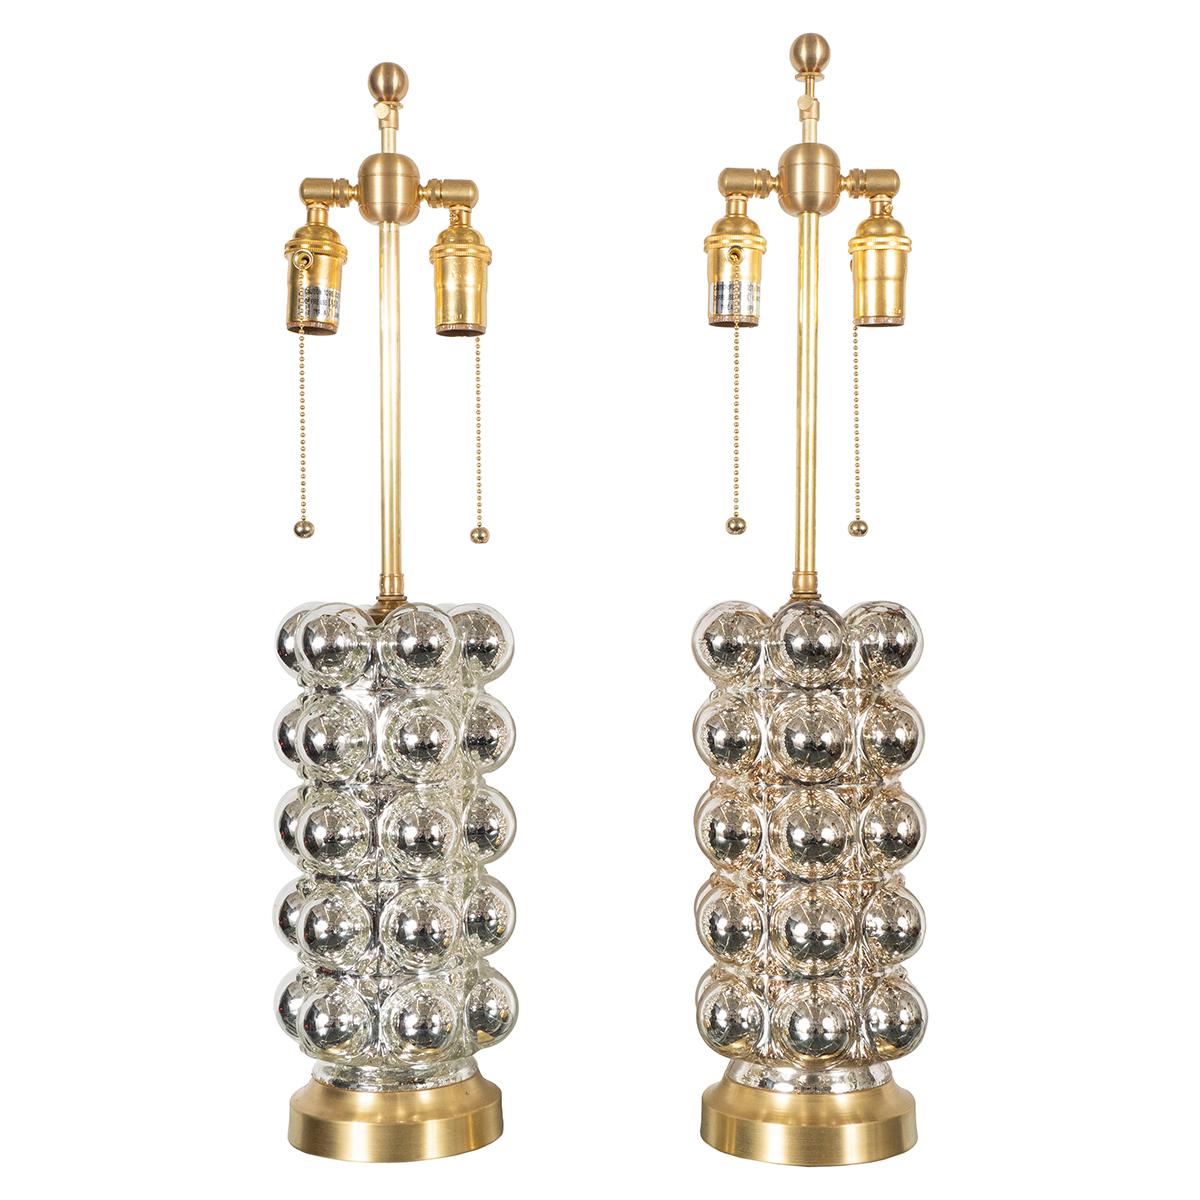 Paar zylindrische Lampen mit Quecksilberblasen-Glaskörper. Die Farbe variiert leicht zwischen den Paaren.